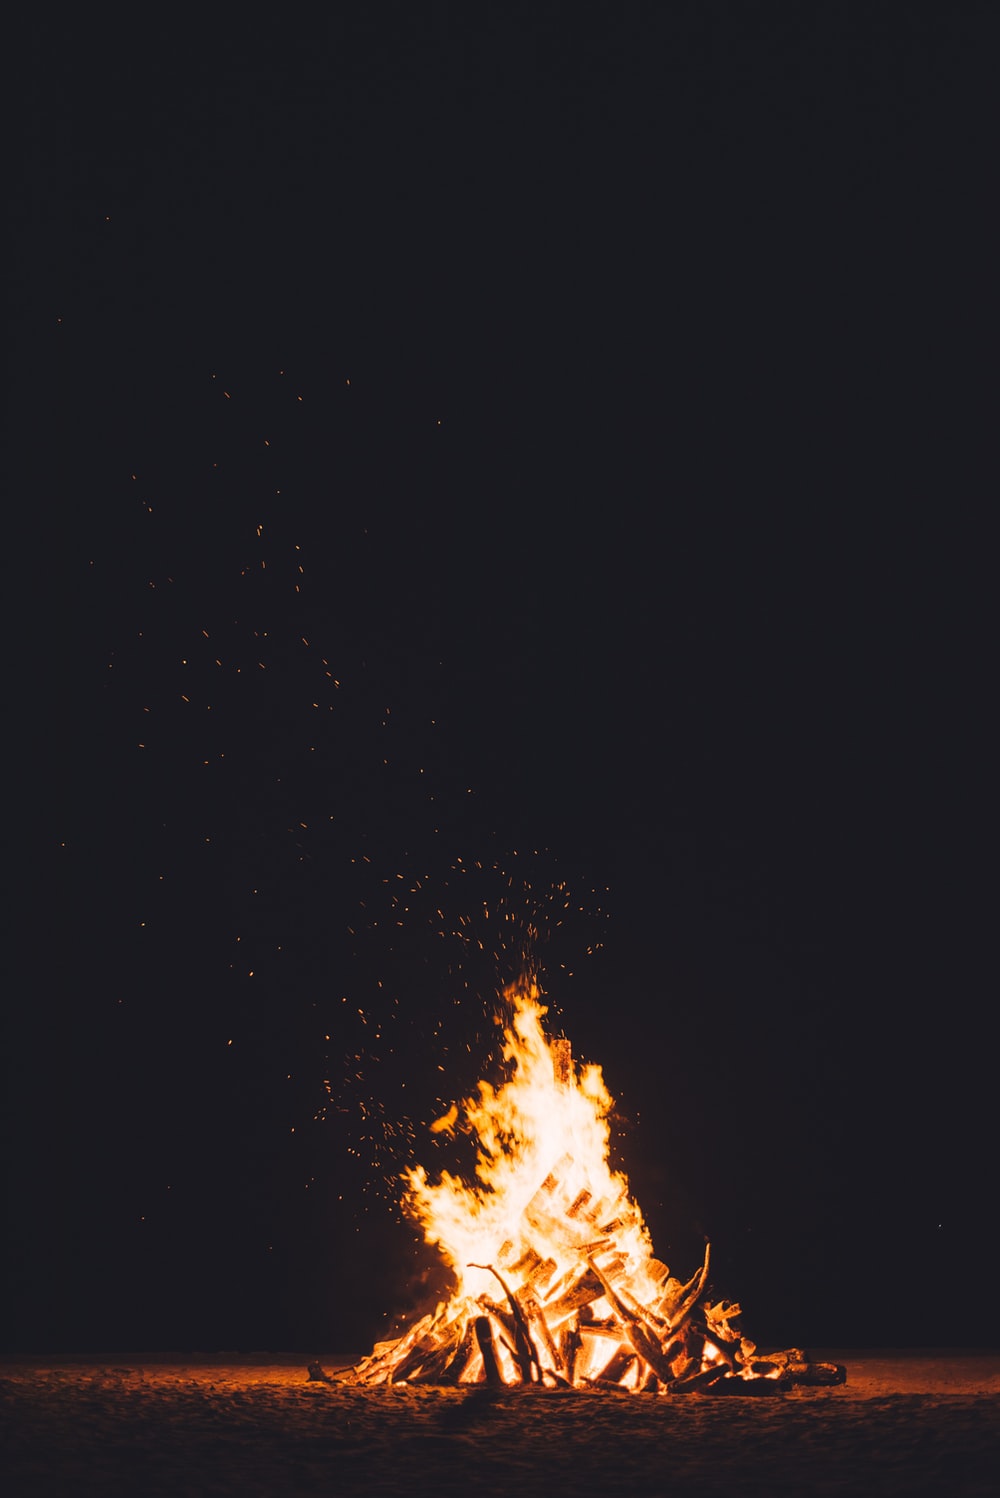 Picture Of A Bonfire - KibrisPDR